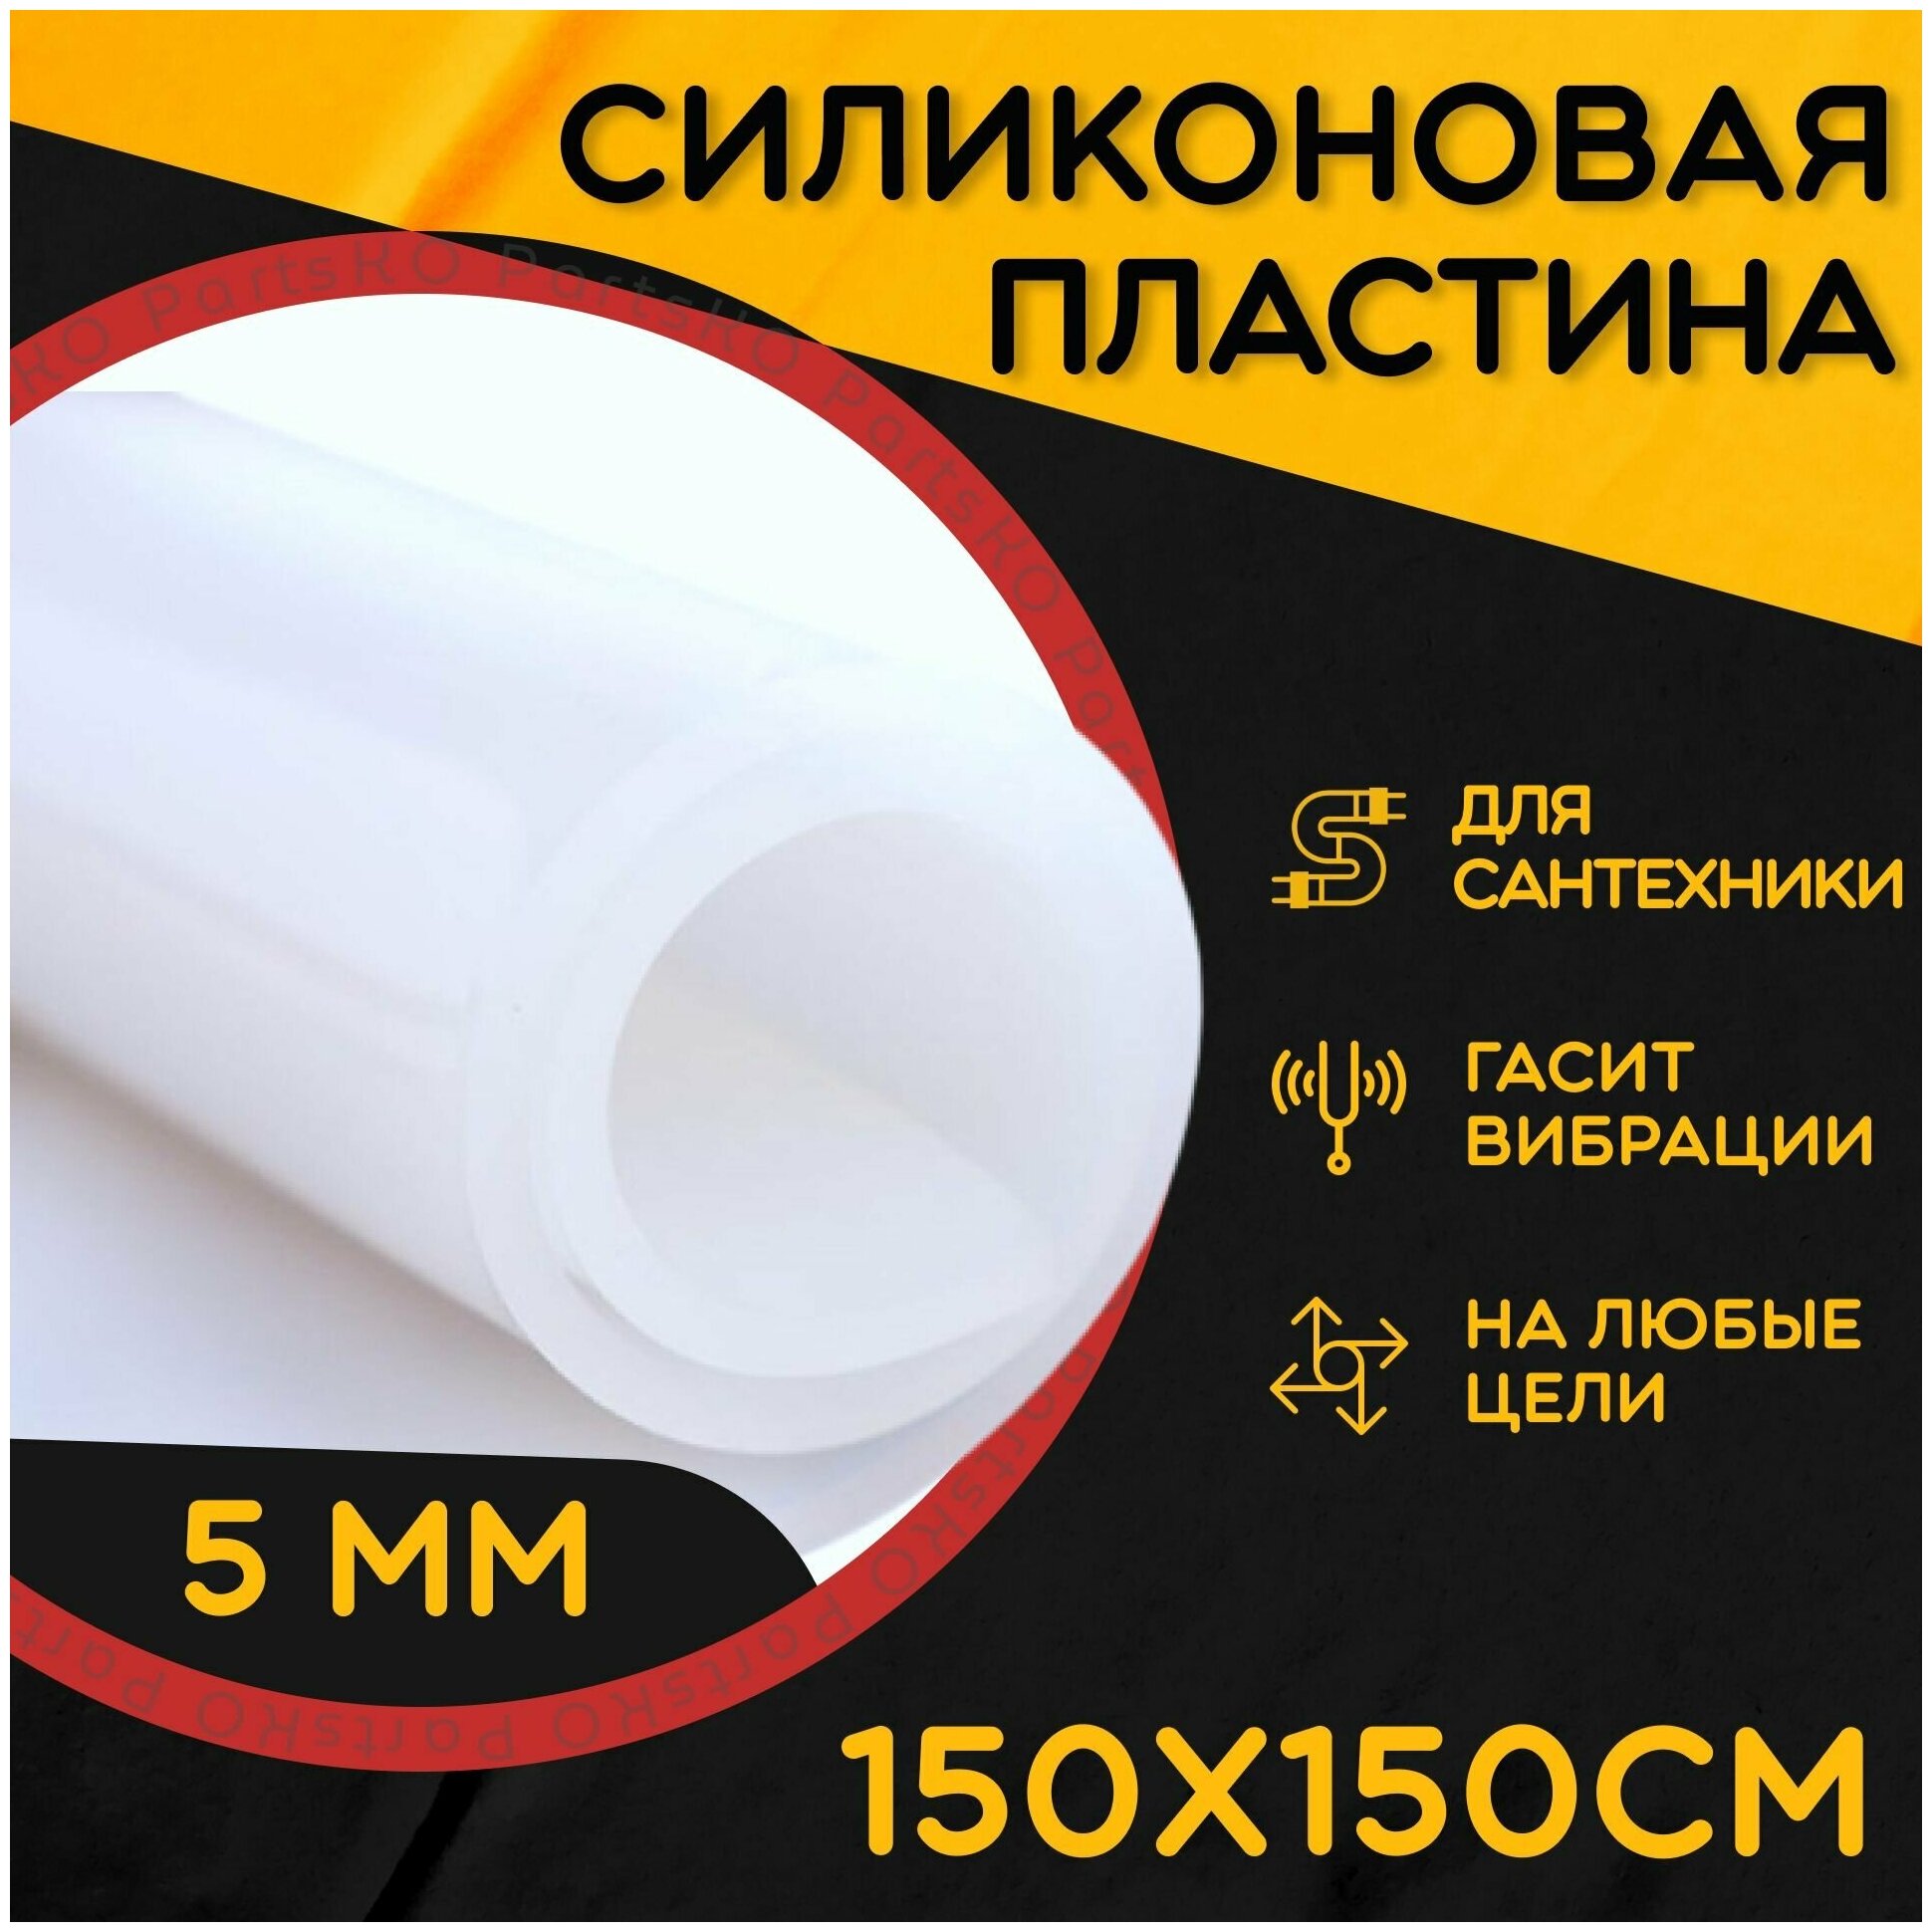 Силиконовая резина термостойкая. Толщина 5 мм. Размер 150х150 мм / Уплотнительная прокладка / Силиконовая пластина белого цвета.